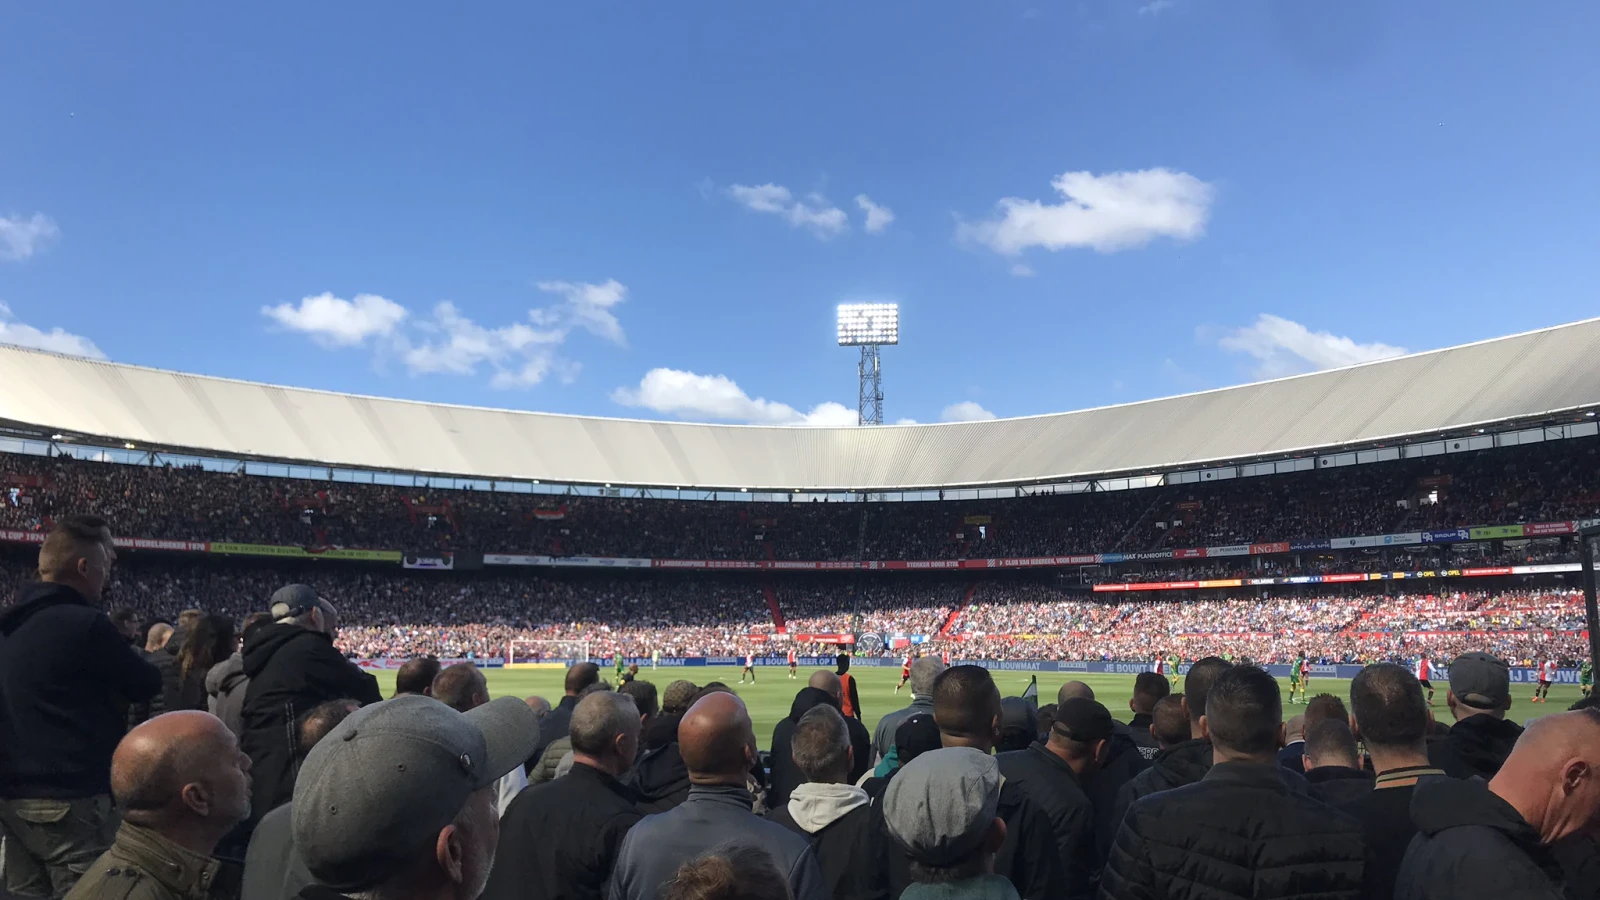 Stadsderby tussen Feyenoord en Sparta in uitverkochte Kuip